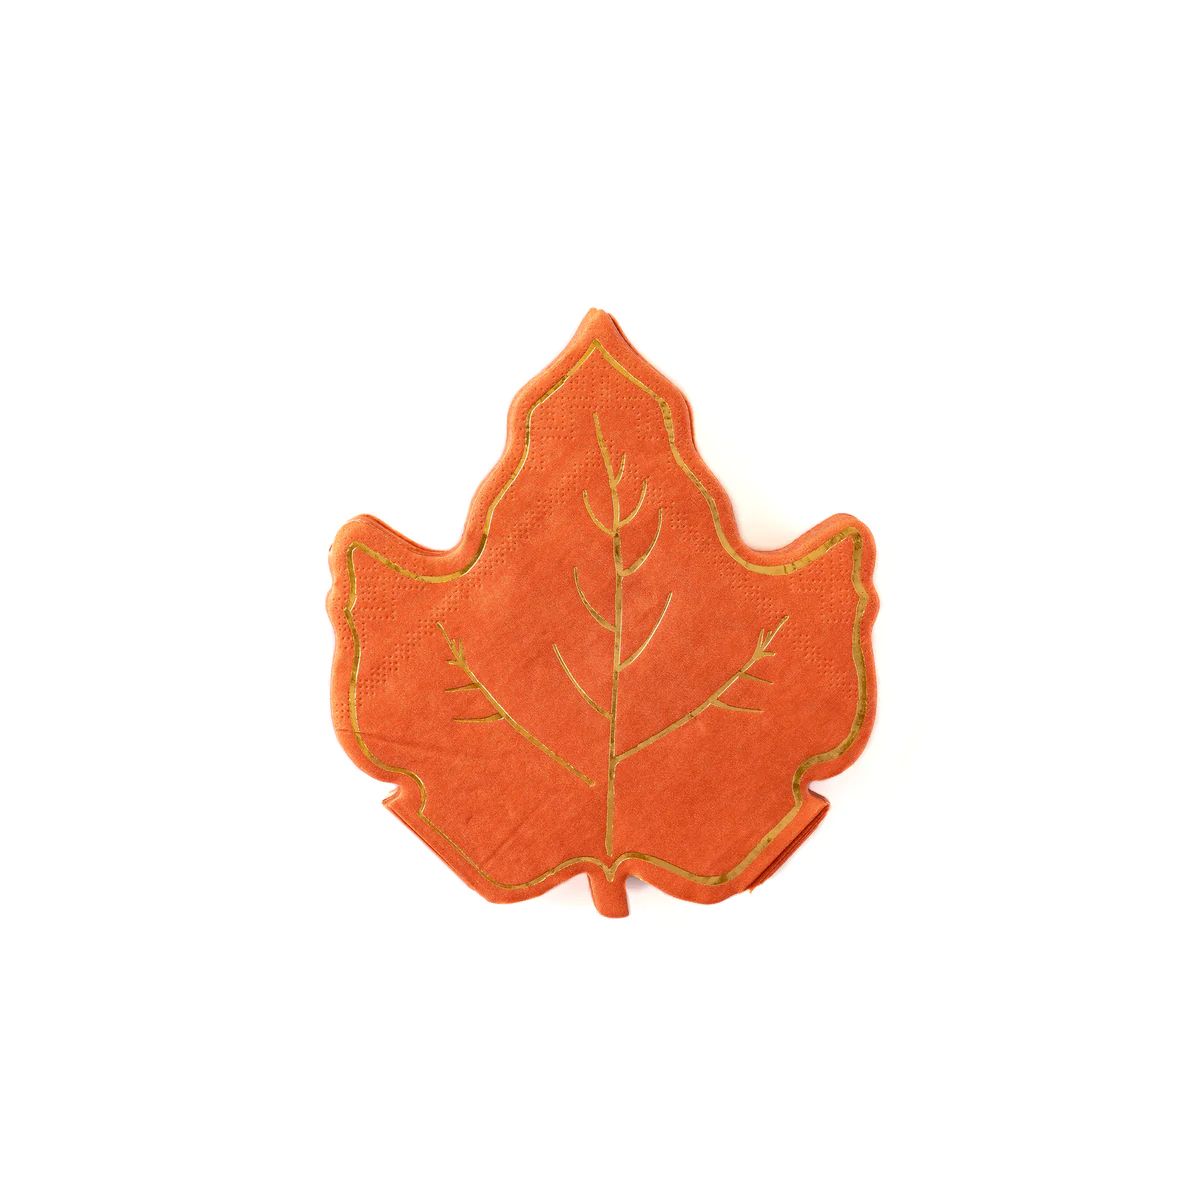 Maple Leaf Shaped Napkins | My Mind's Eye